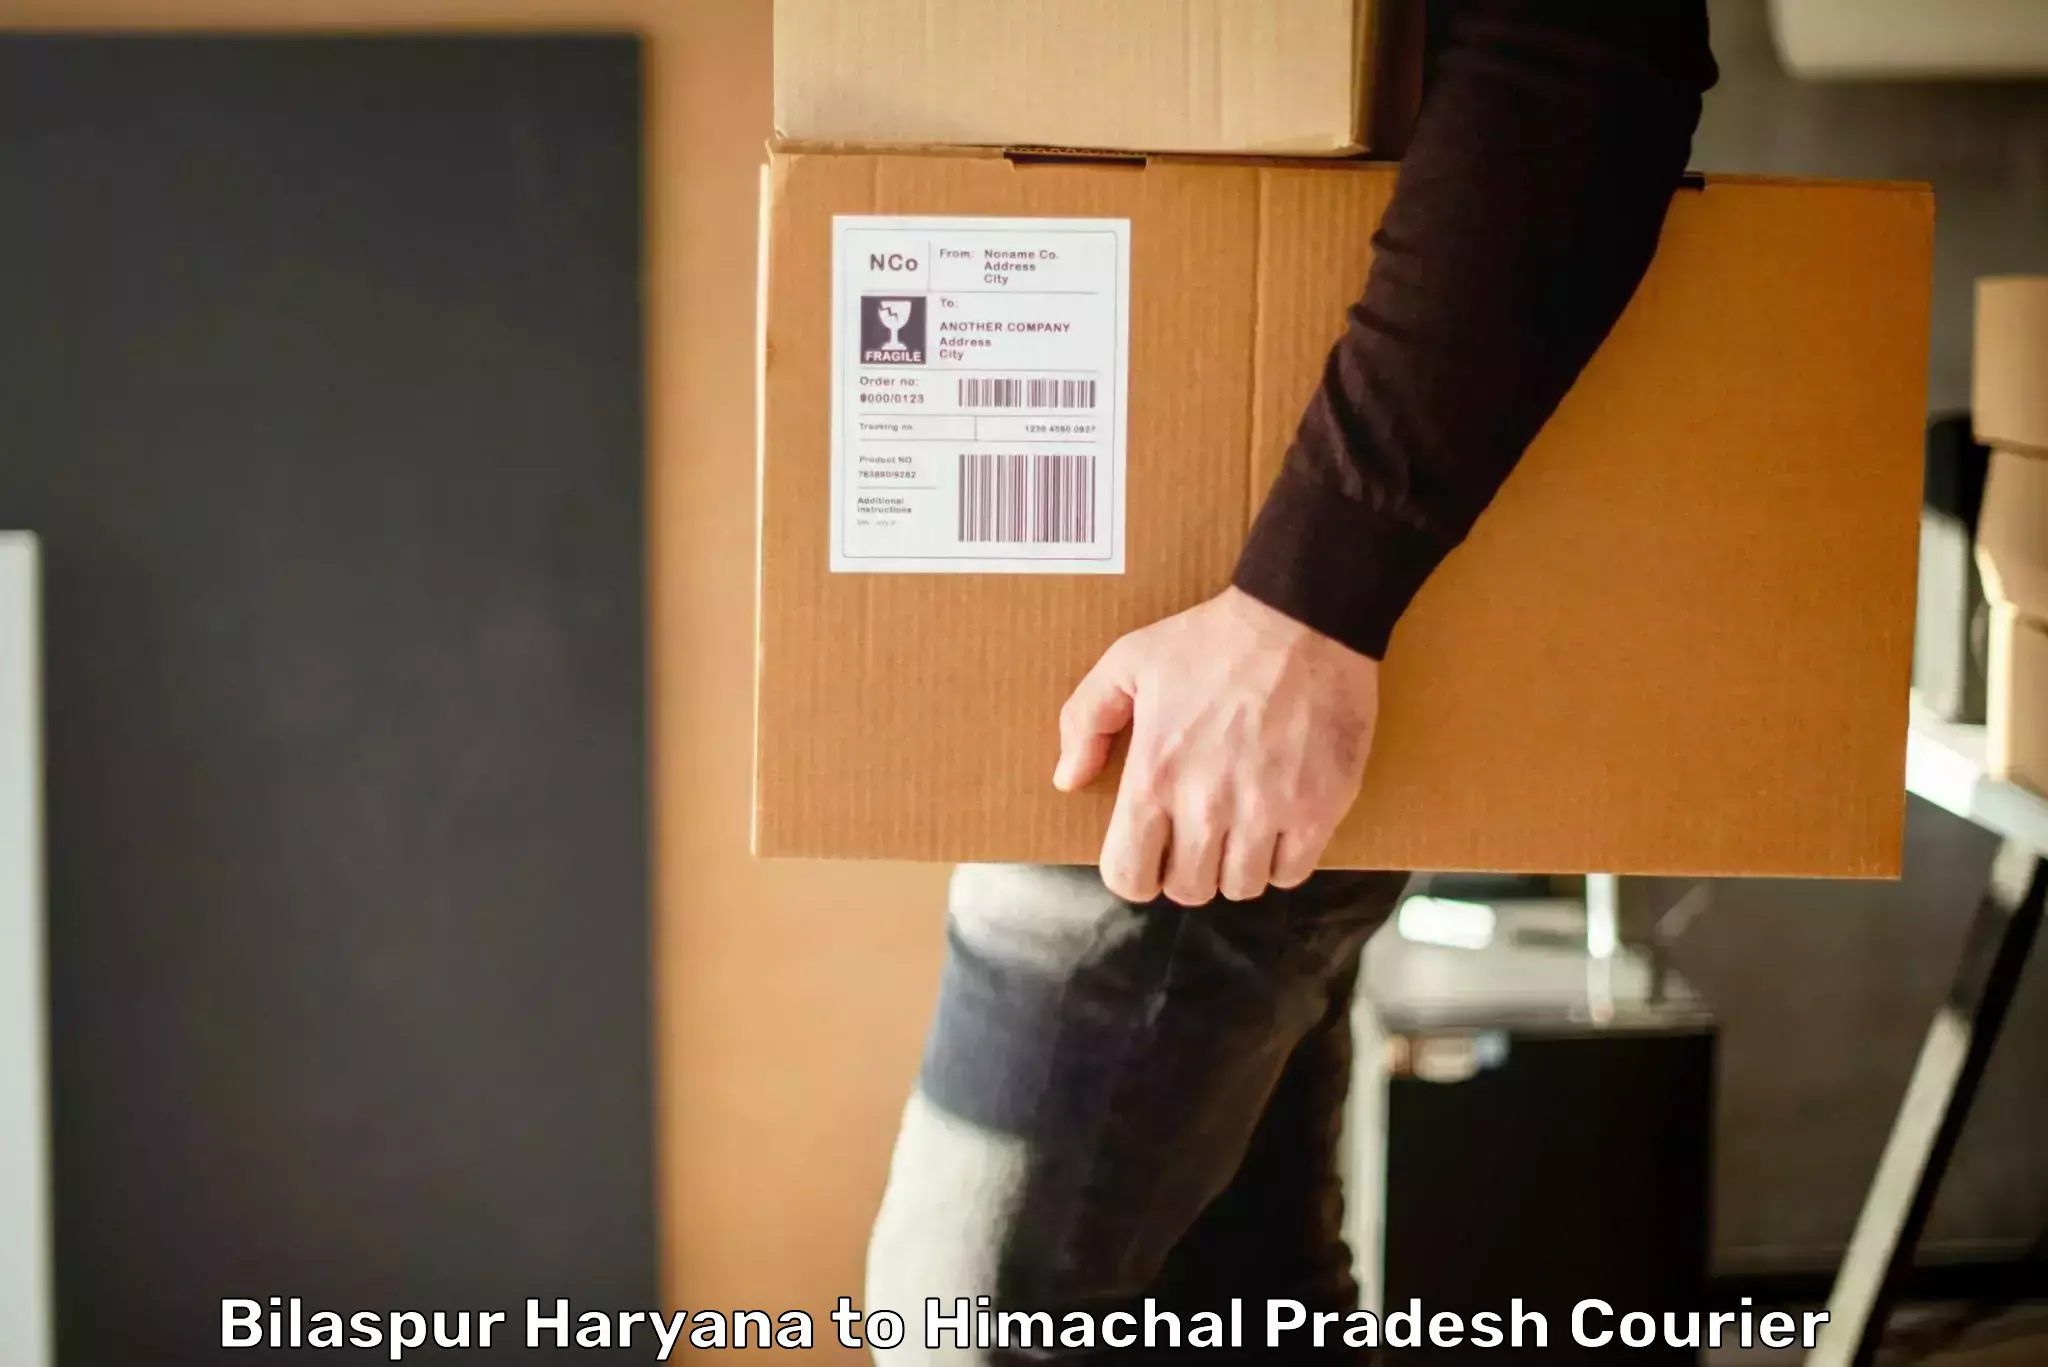 Express logistics service Bilaspur Haryana to Nadaun